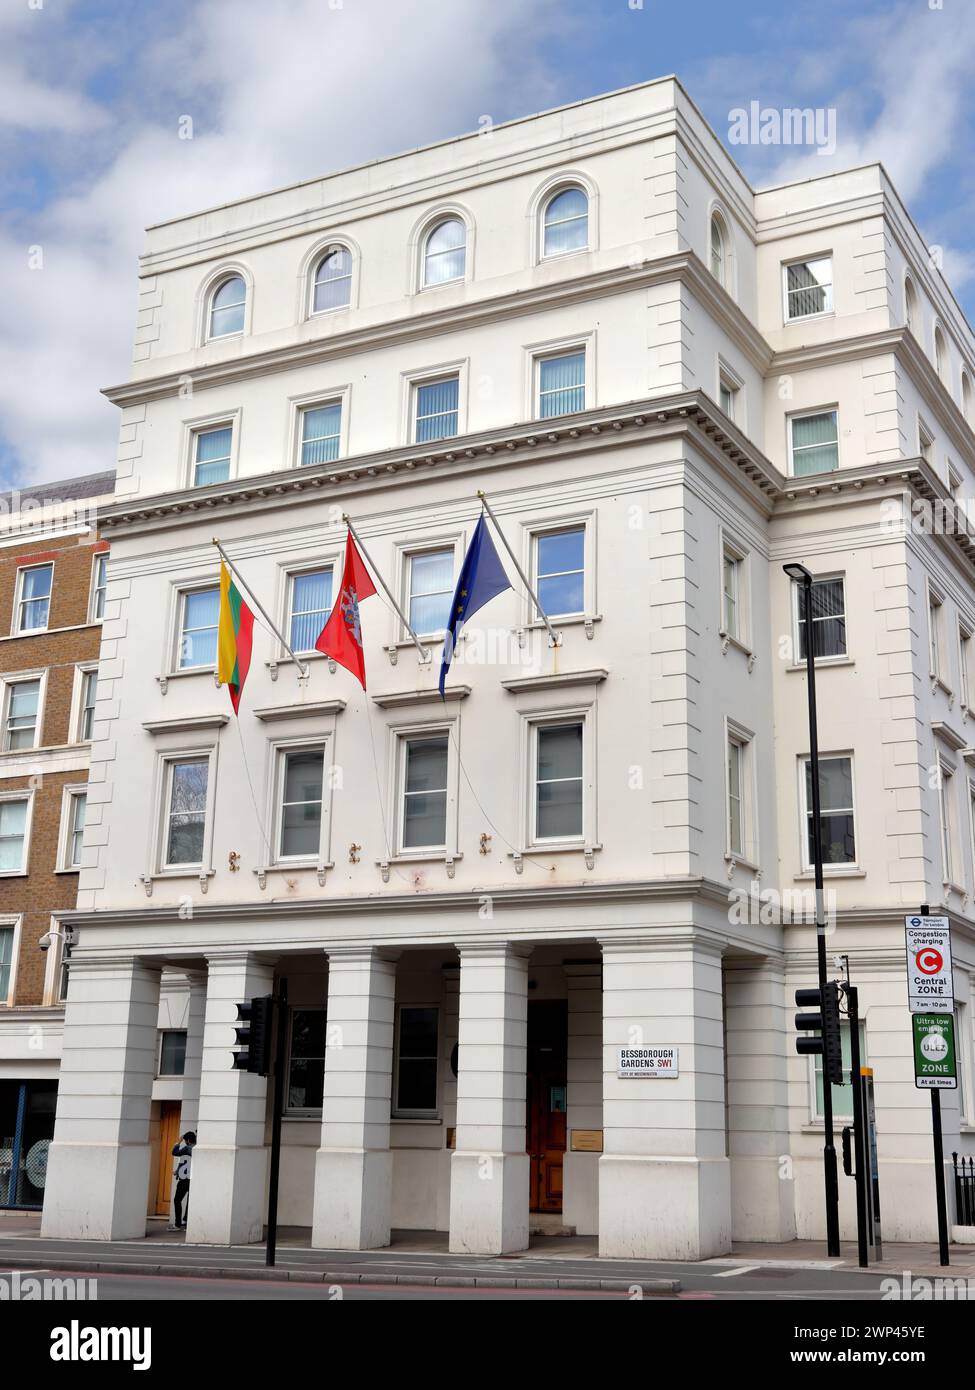 Lituania House, Ambasciata di Lituania a Londra, missione diplomatica della Lituania nel Regno Unito Foto Stock